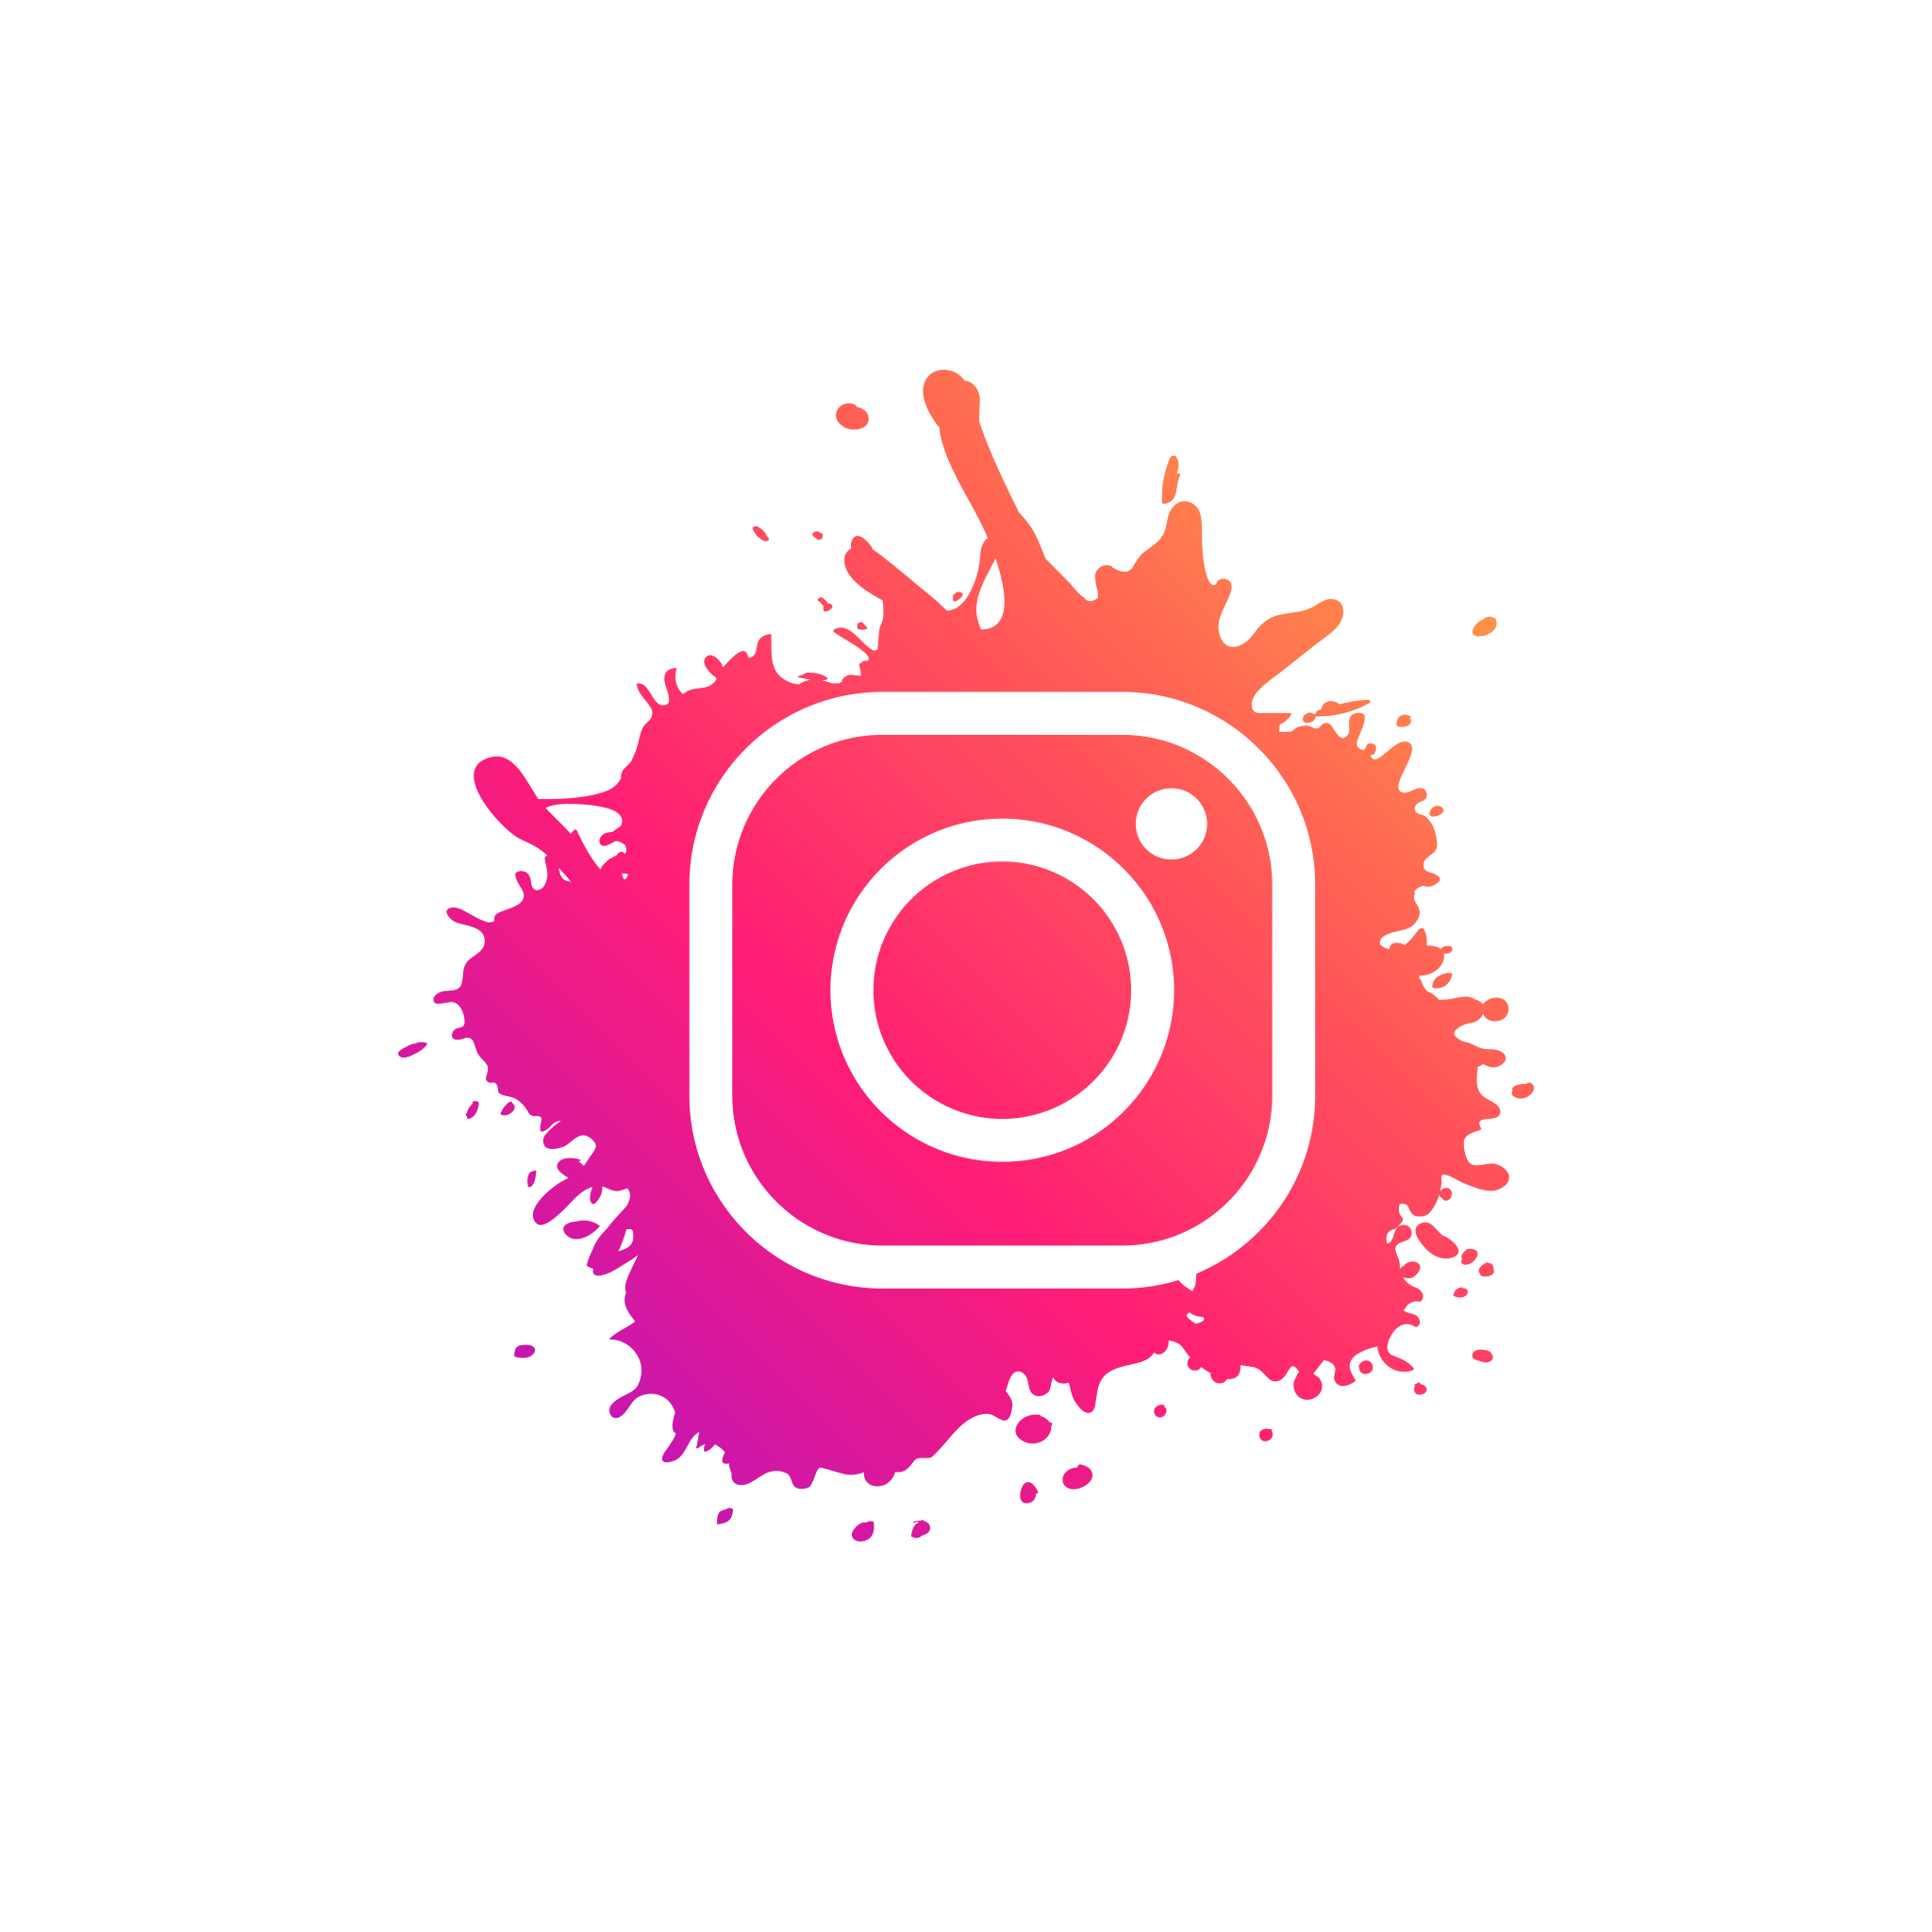 Với Instagram logo PNG, bạn có thể sử dụng biểu tượng Instagram một cách dễ dàng và hiệu quả trong các thiết kế của mình. Tại đây, bạn có thể tải xuống các phiên bản logo Instagram PNG với độ phân giải cao và đầy đủ màu sắc để thêm vào các bài đăng, story và trang cá nhân của bạn.